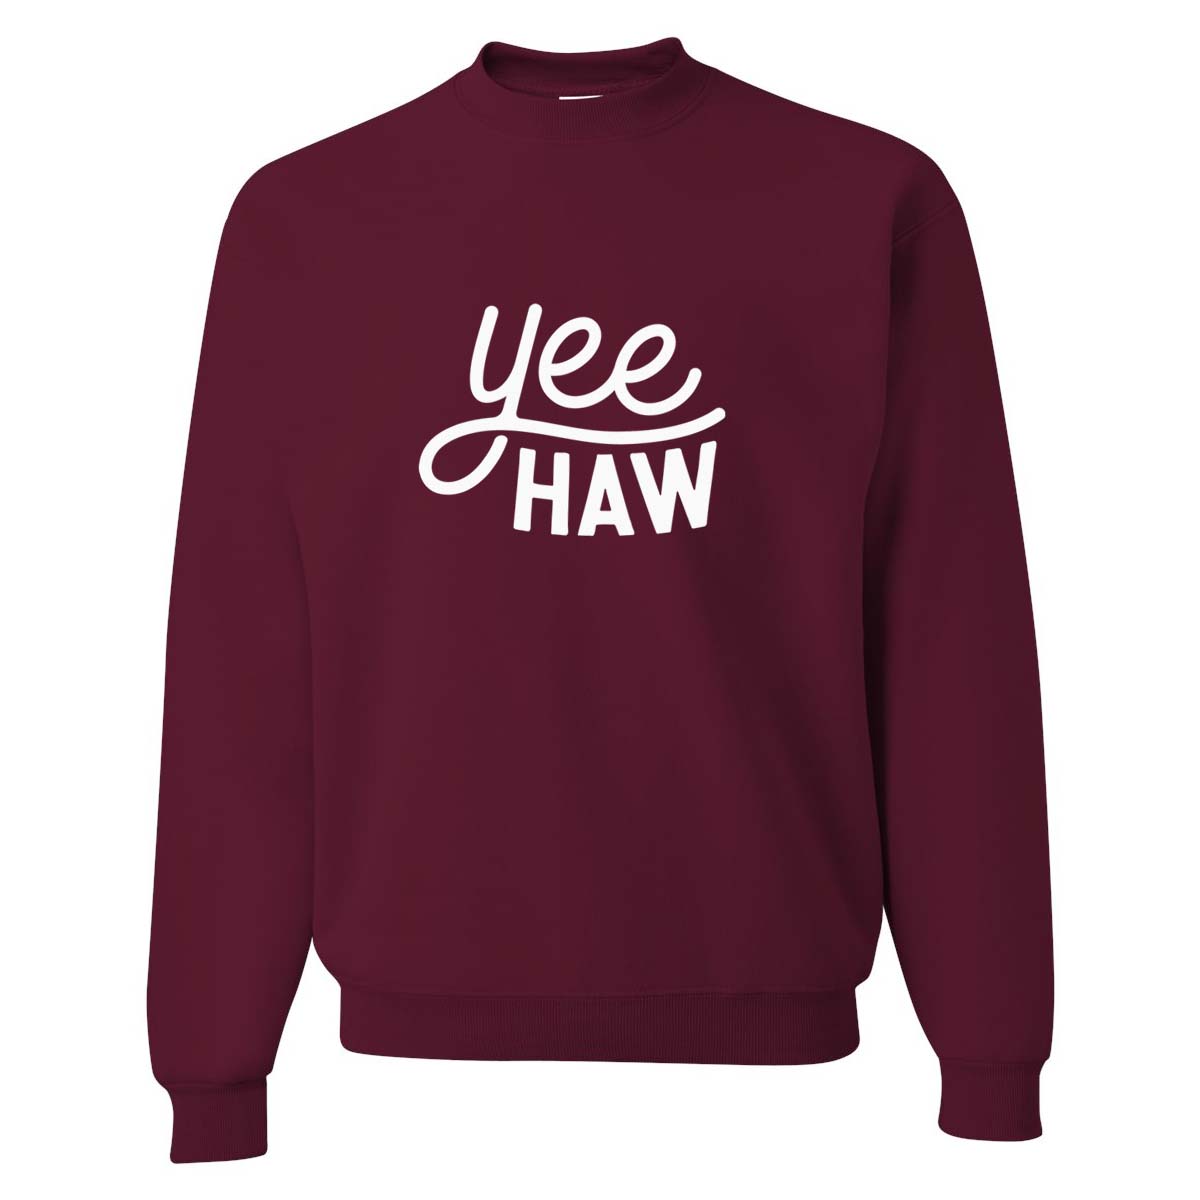 Yee Haw Sweatshirt